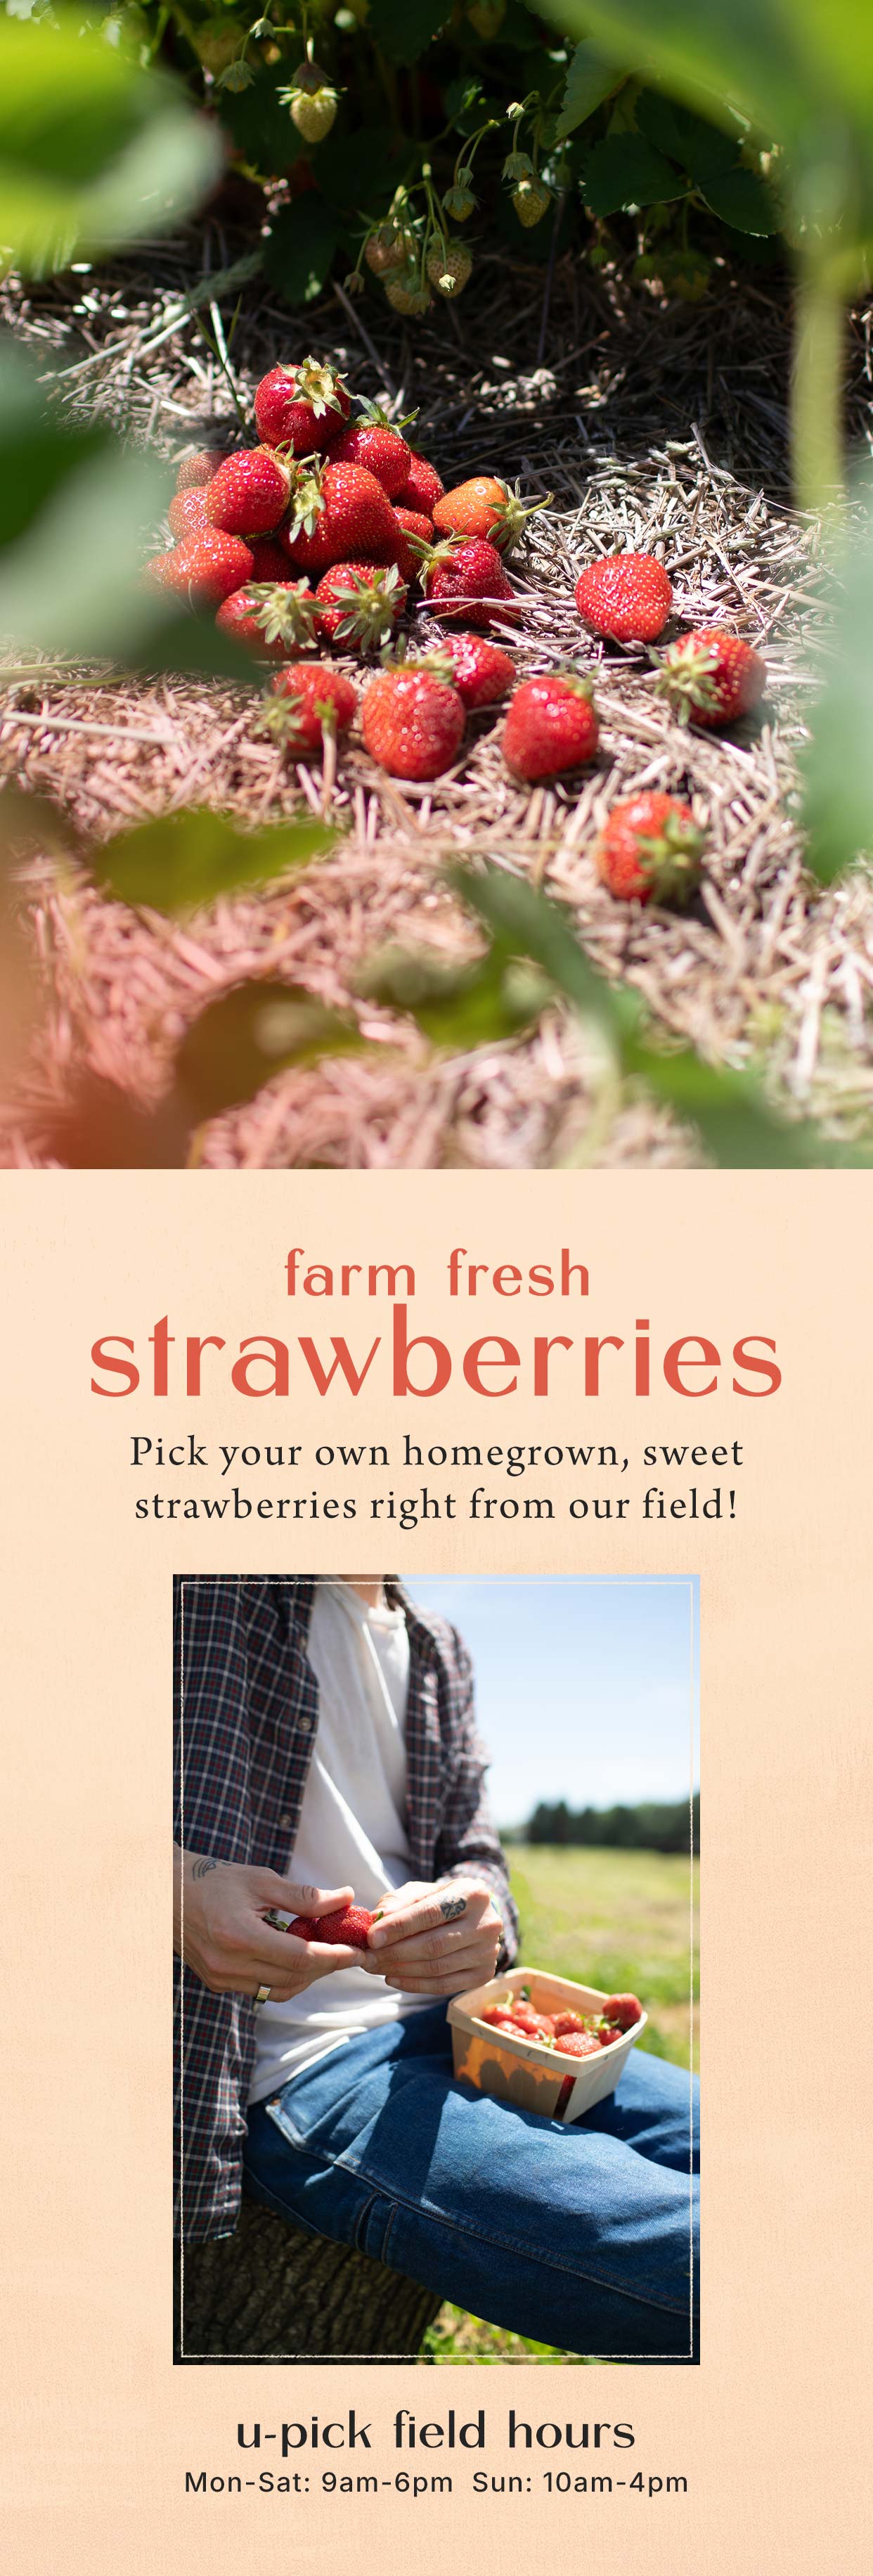 Farm fresh strawberries at Hoen's Garden Center